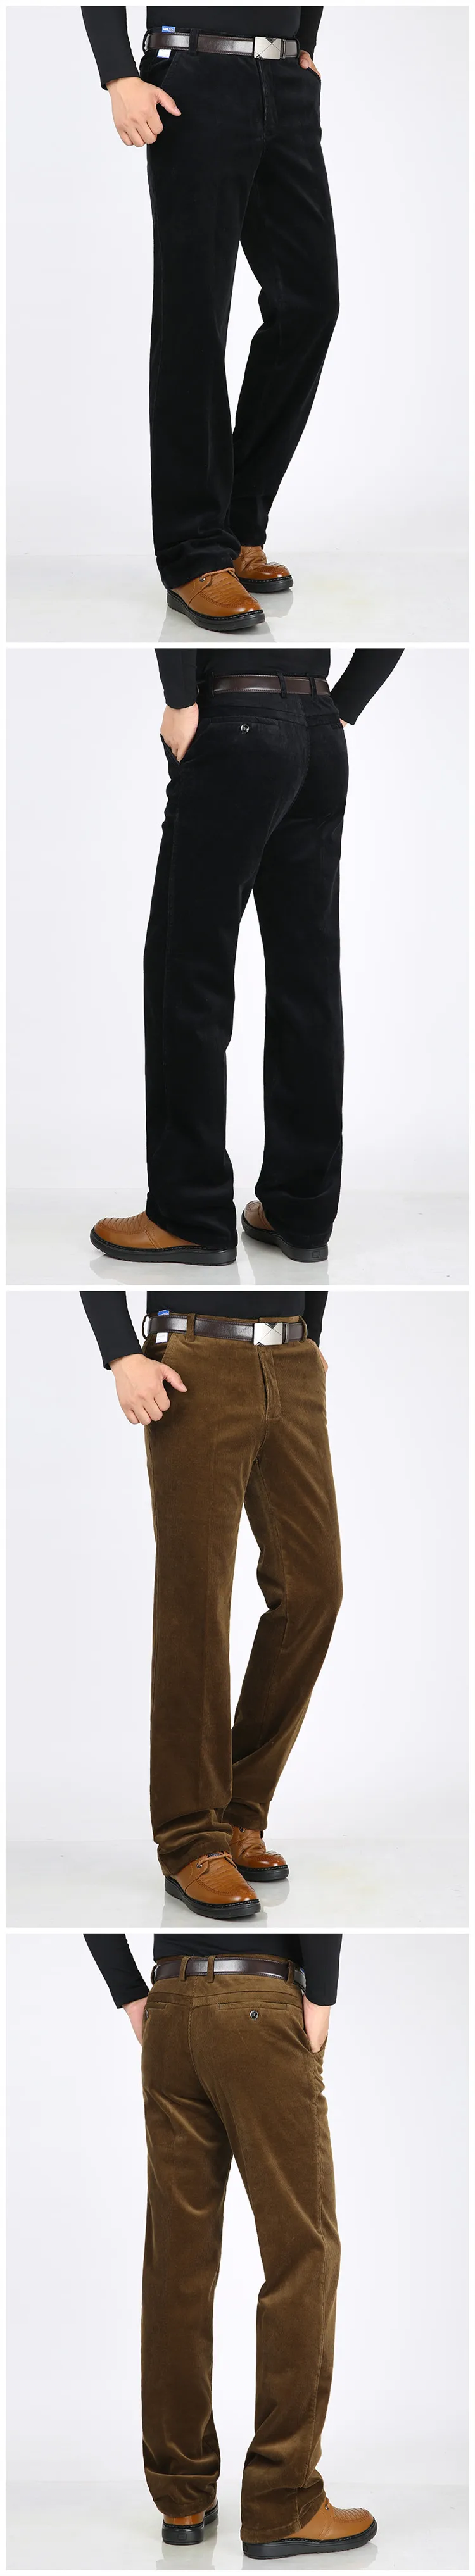 Mu Yuan Yang, скидка 50%, мужские длинные штаны, большие размеры, вельветовые однотонные брюки, новинка, зимние утепленные прямые брюки, 38, 40, 42